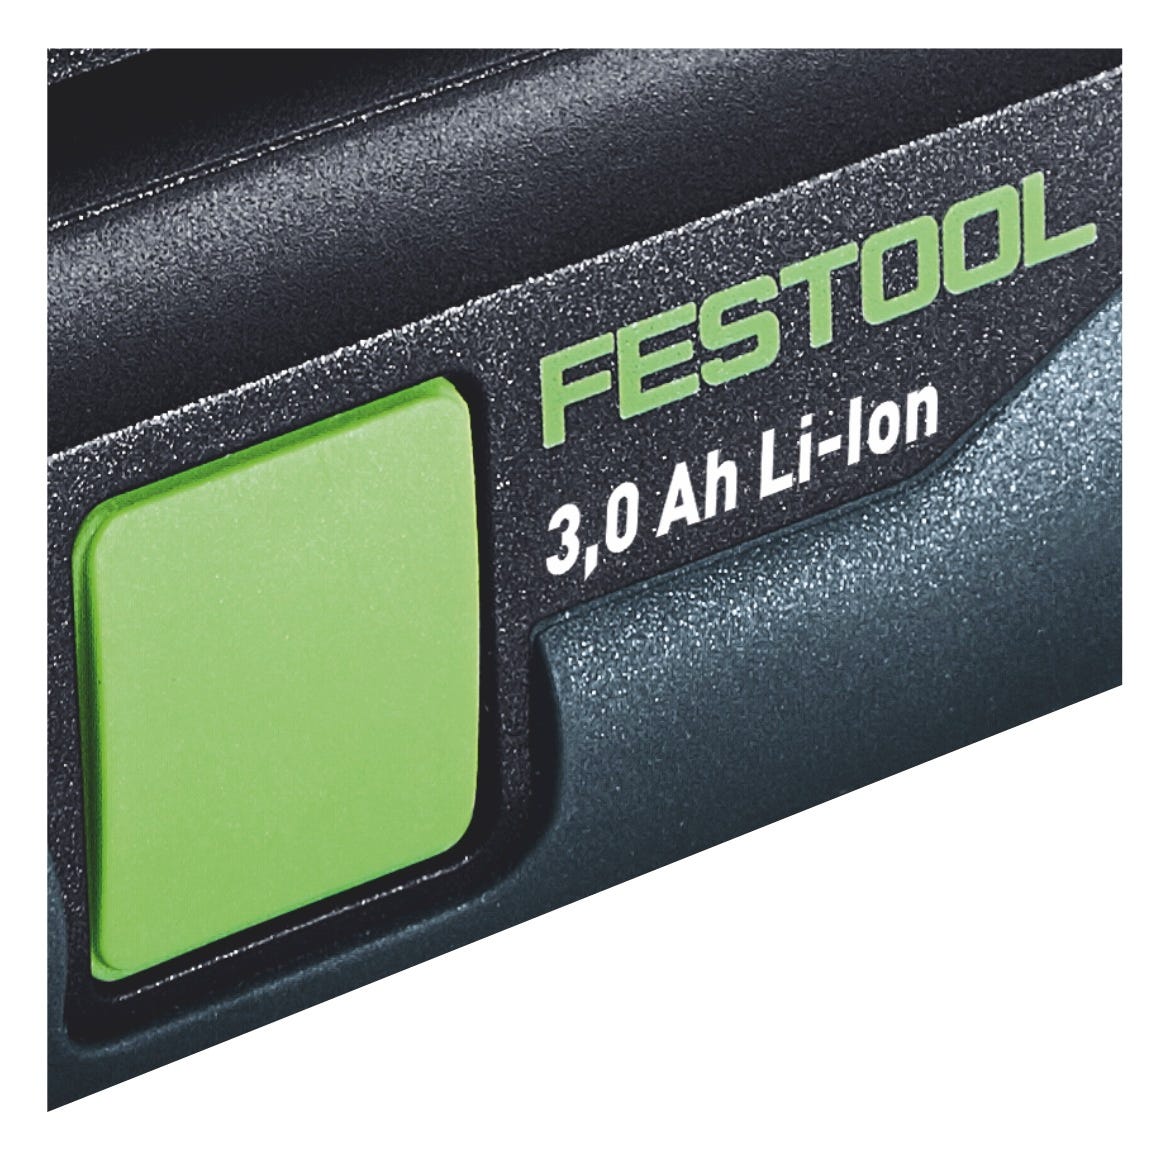 Batterie Festool 3x BP 18 Li 3,0 C batterie 18 V 3,0 Ah / 3000 mAh Li-Ion ( 3x 577658 ) avec indicateur de niveau de charge 2